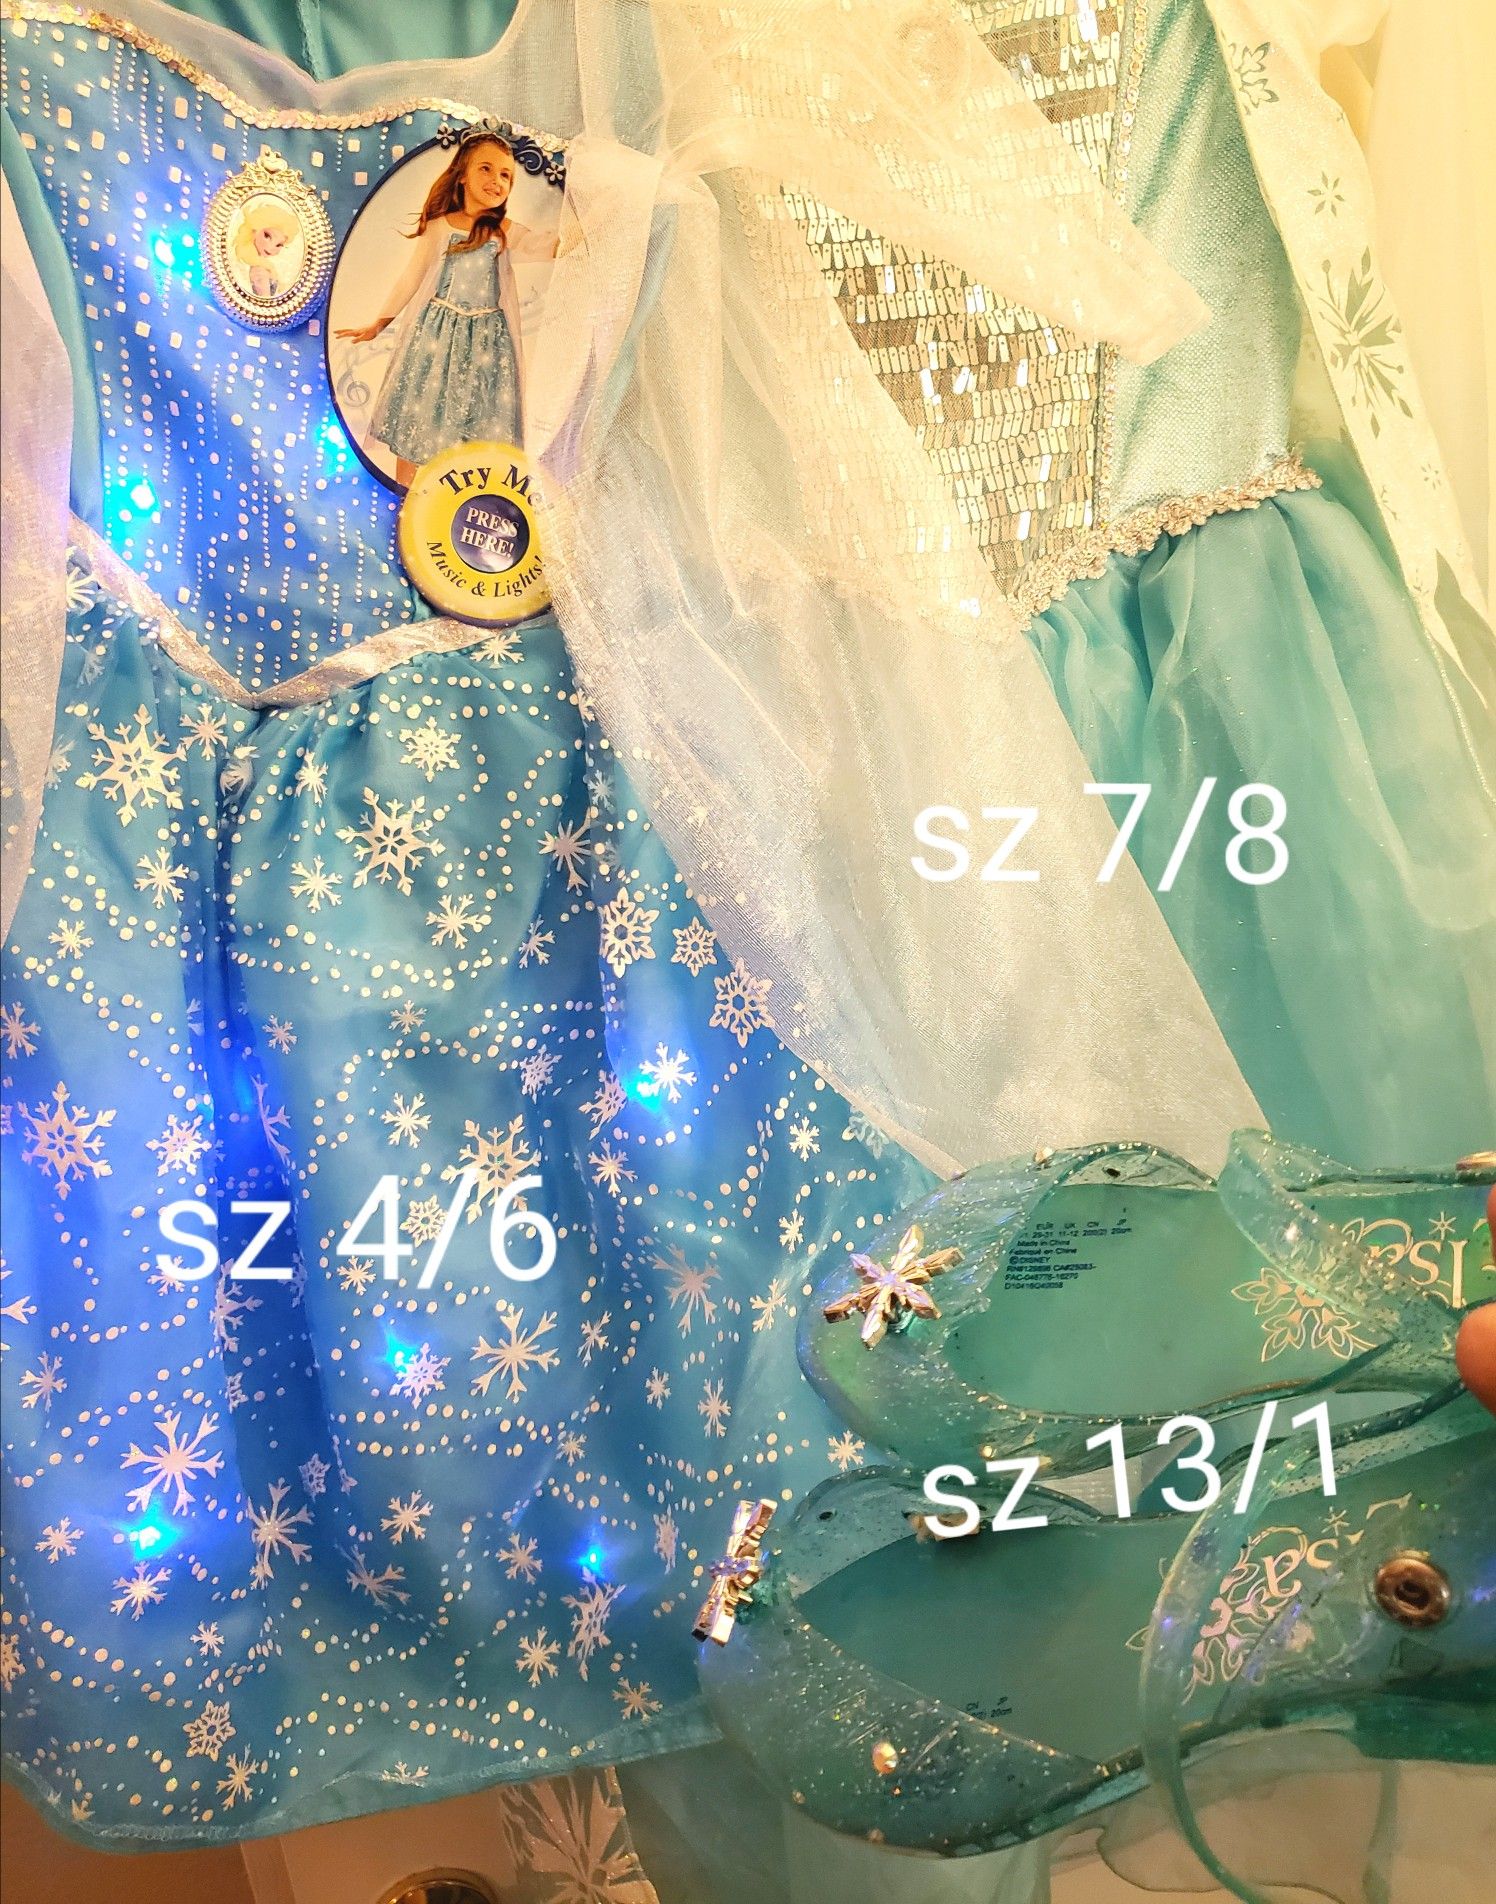 3 Frozen Elsa Official Disney Dresses and Shoes